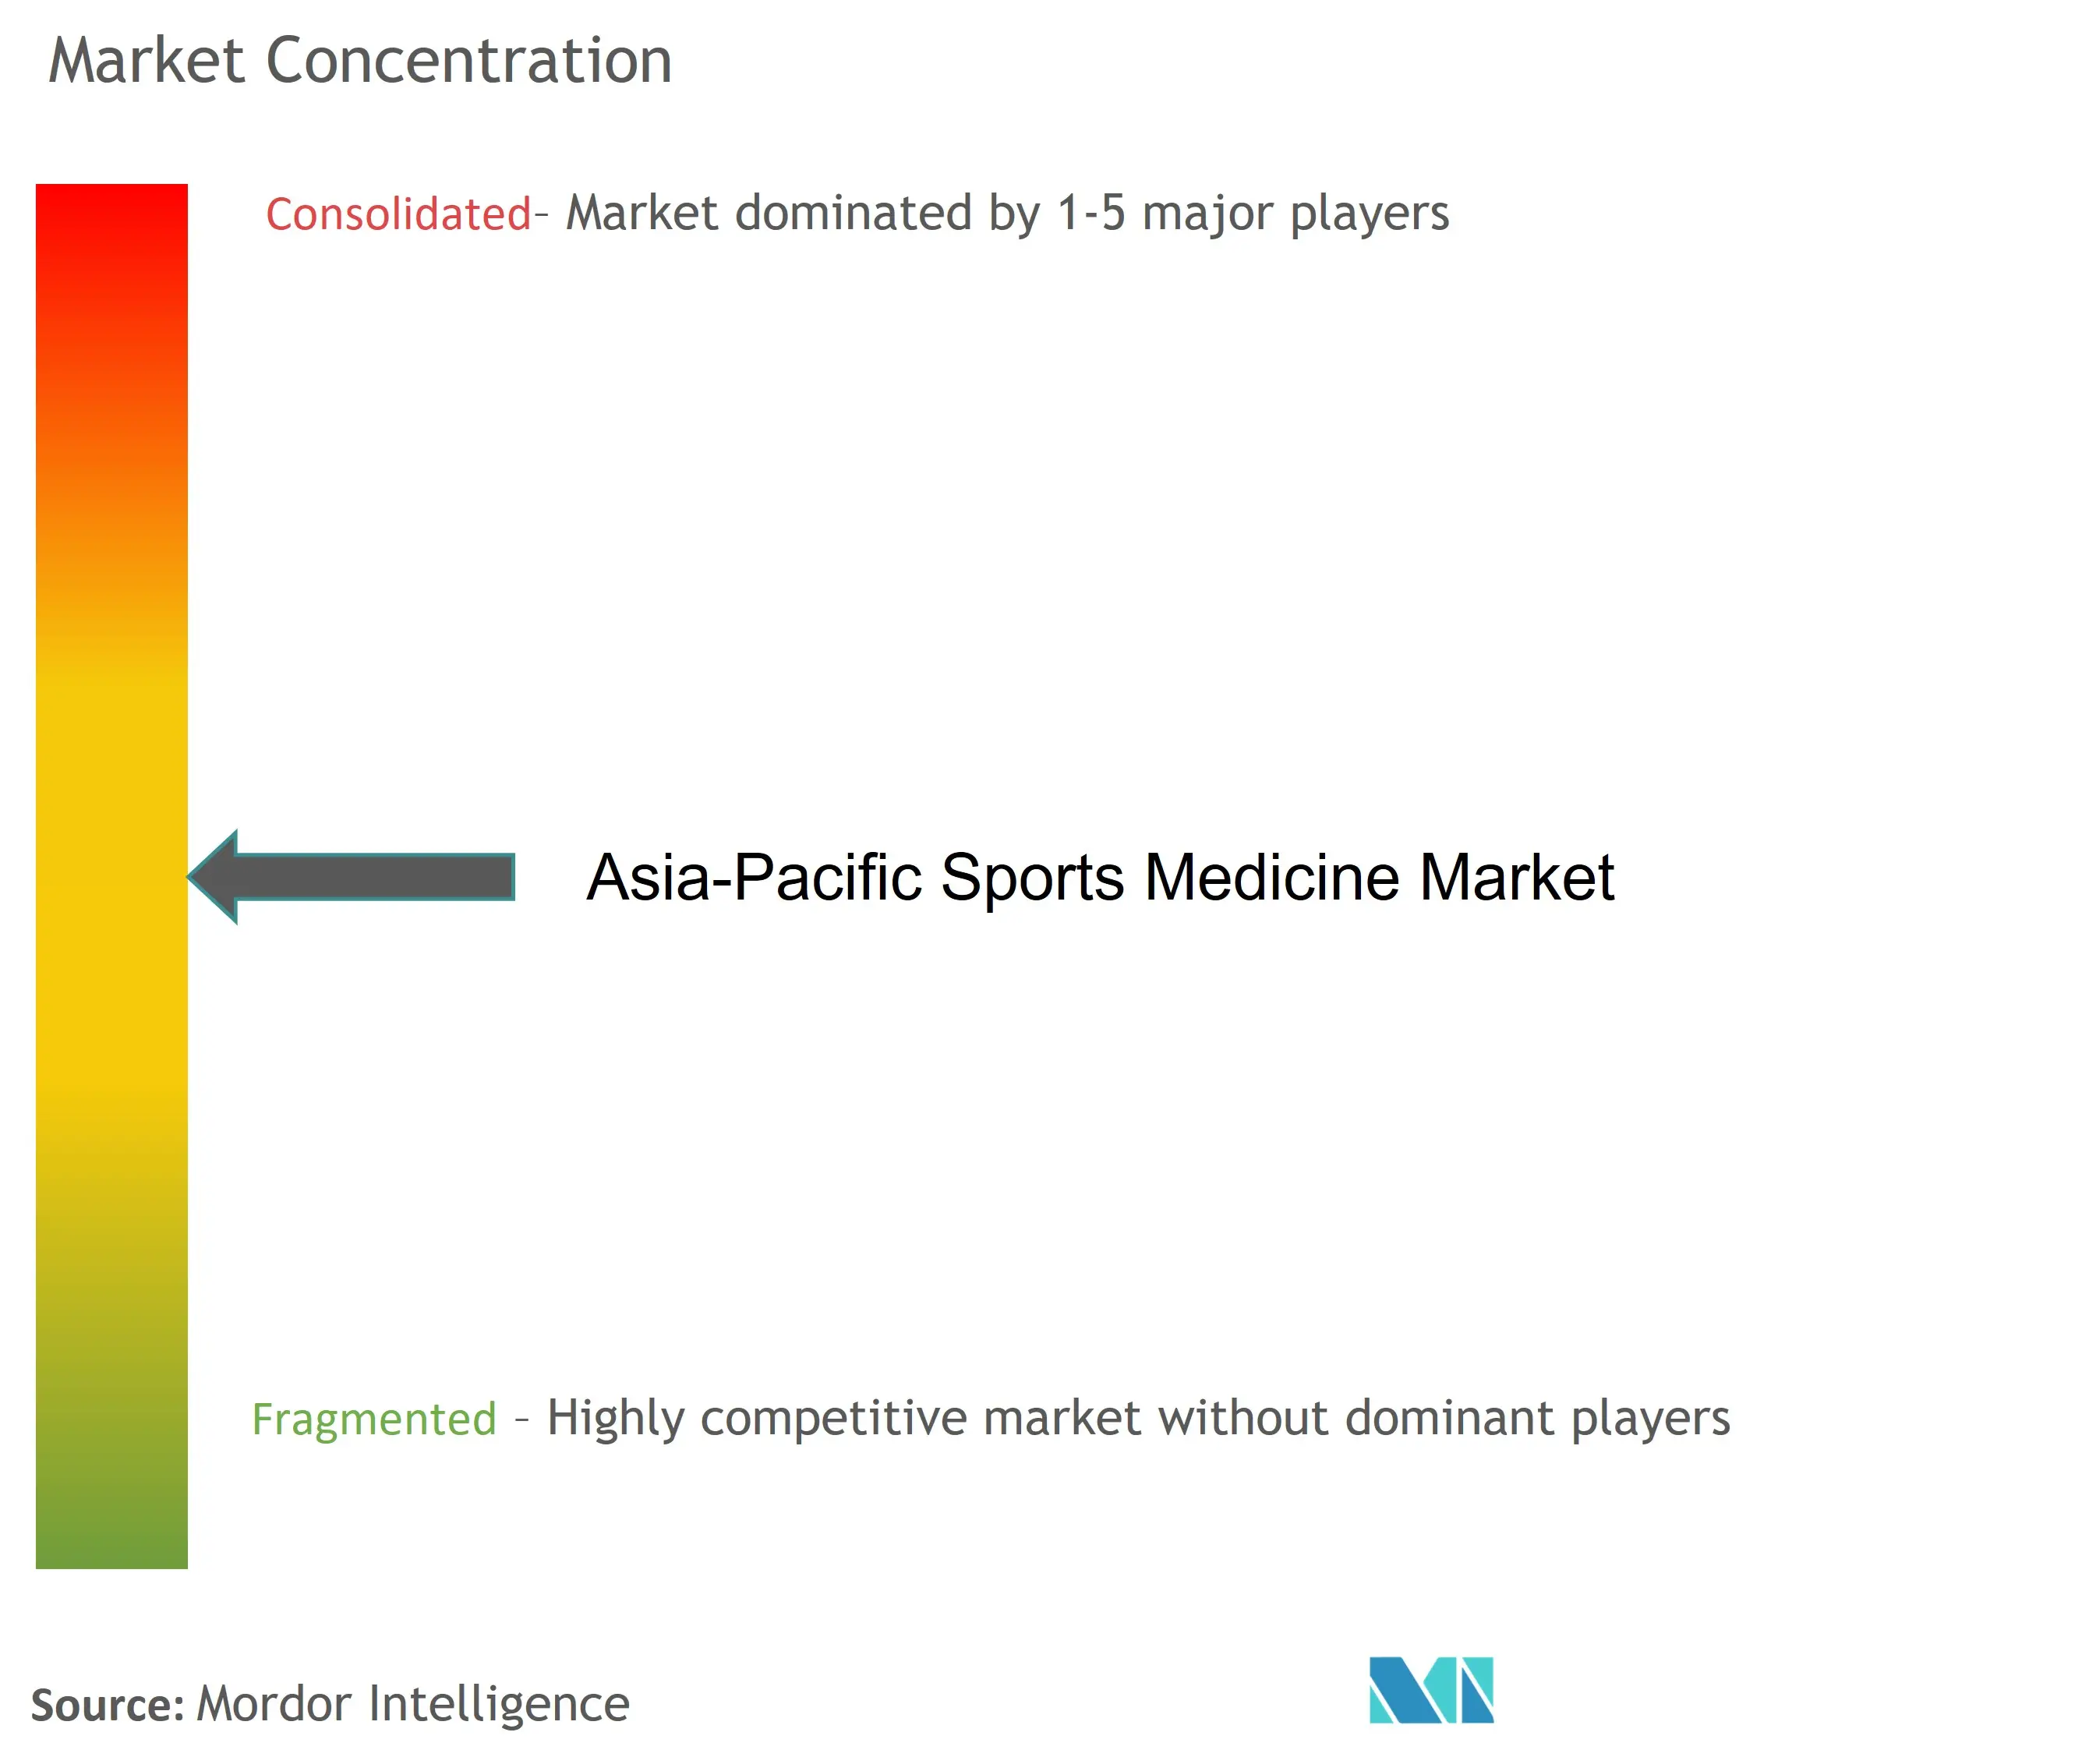 Médecine du sport Asie-PacifiqueConcentration du marché